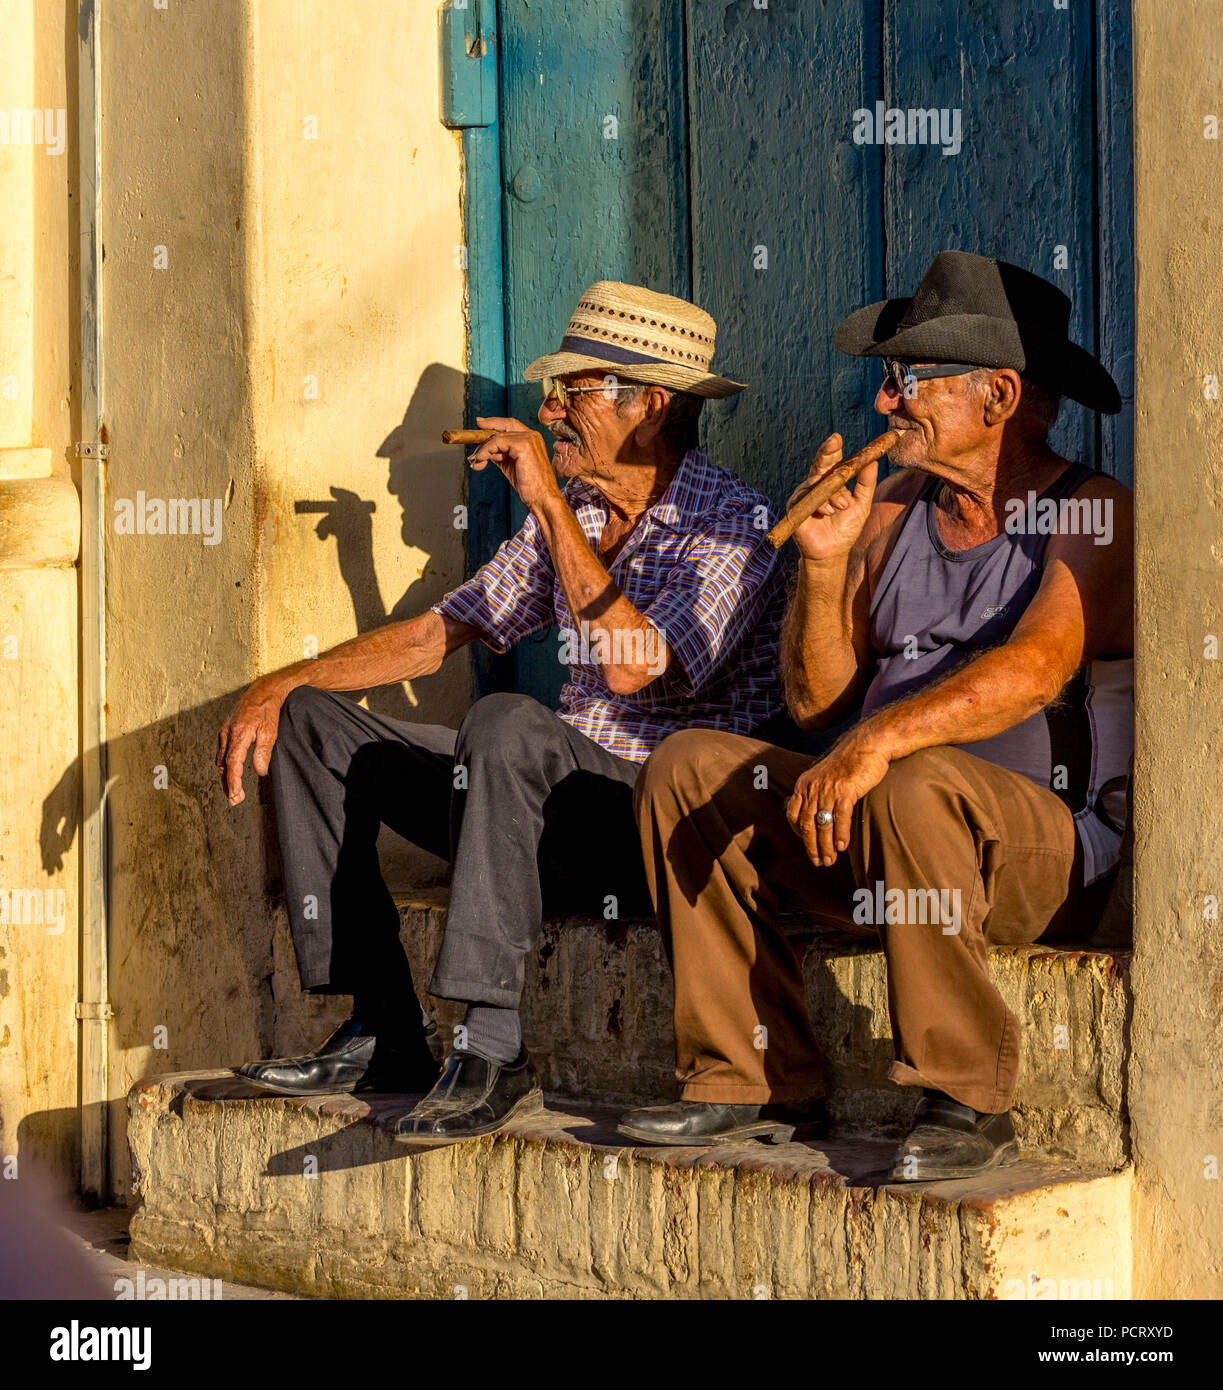 Dos viejos cubanos fuman cigarros y sentarse en una escalera en la cálida luz del atardecer, Trinidad, Cuba, Sancti Spíritus, Cuba Foto de stock